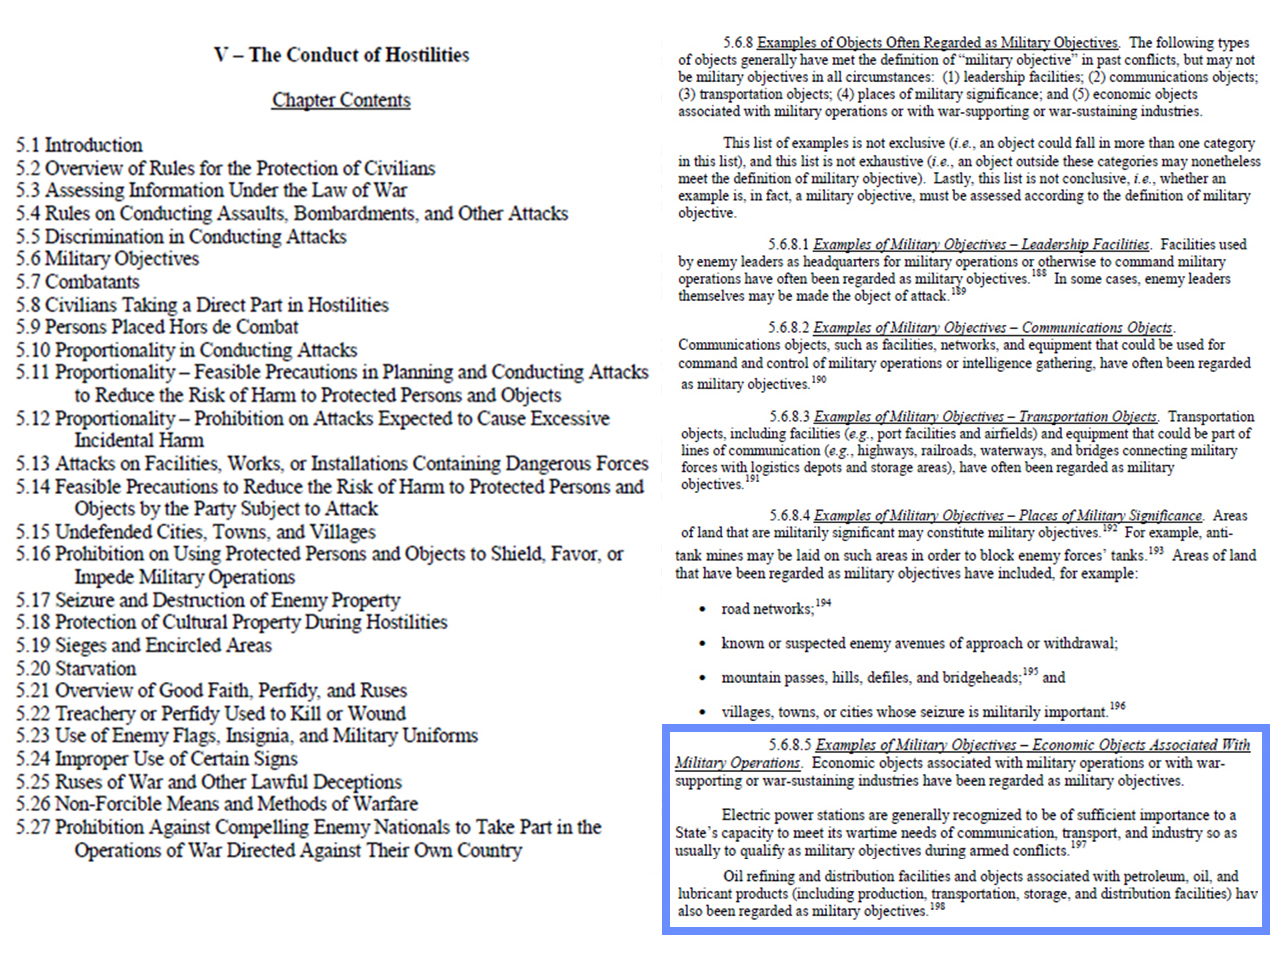 그림 5. 미국 국방부(DoD)가 펴낸 전쟁법 매뉴얼(DoD Law Manual) 2016년 개정판 Chapter 5 목차 (왼쪽) 와 5.6. 군사목표(Military Objectives) 항목 본문(오른쪽) 캡처.